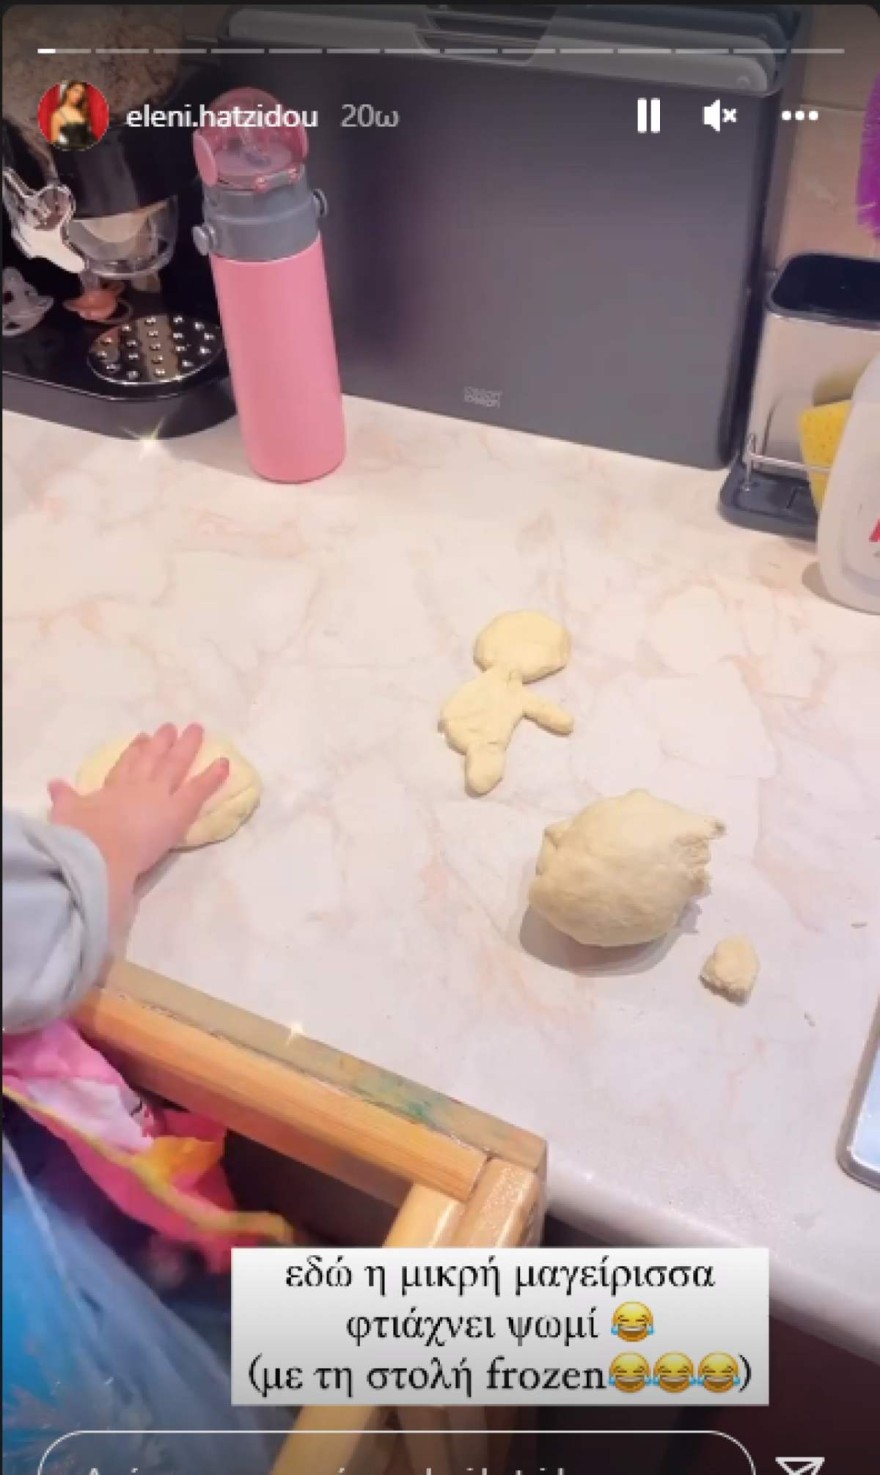 Ελένη Χατζίδου: Μπήκε στην κουζίνα με την κόρη της Μελίτα - Δείτε τι μαγείρεψαν